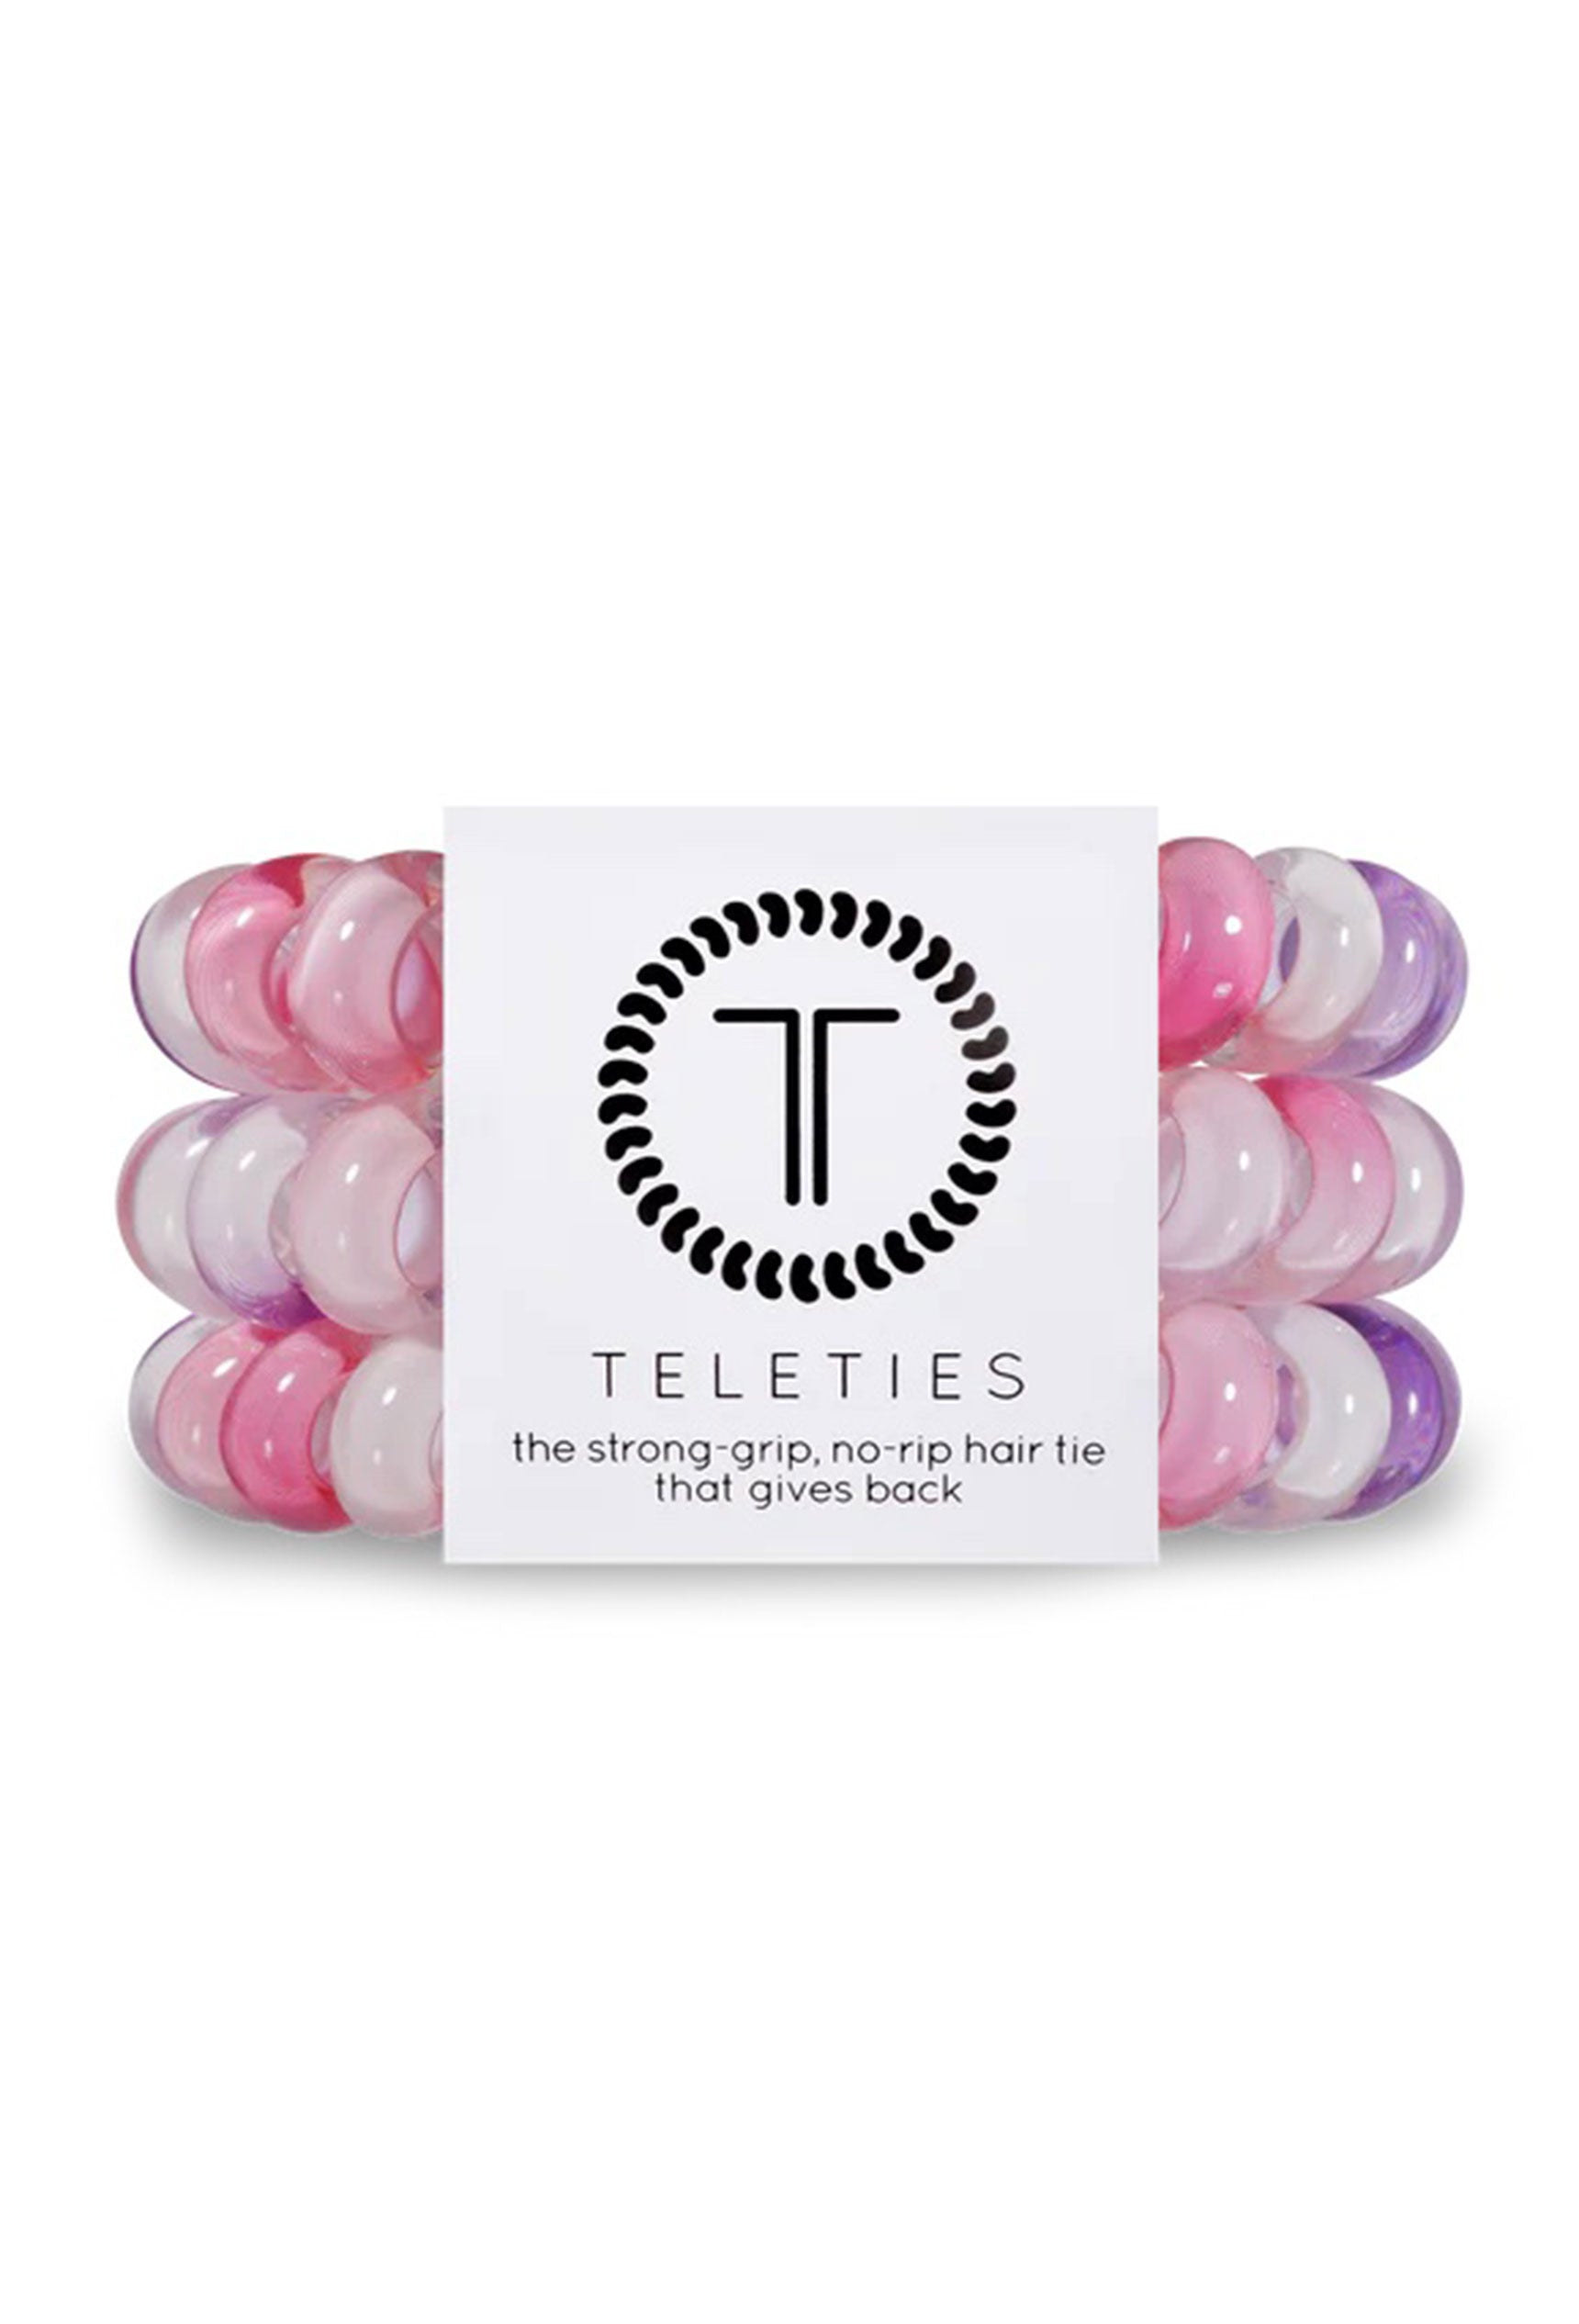 TELETIES Large Hair Ties - Sweetie Pie, pink purple and whirl tie dye